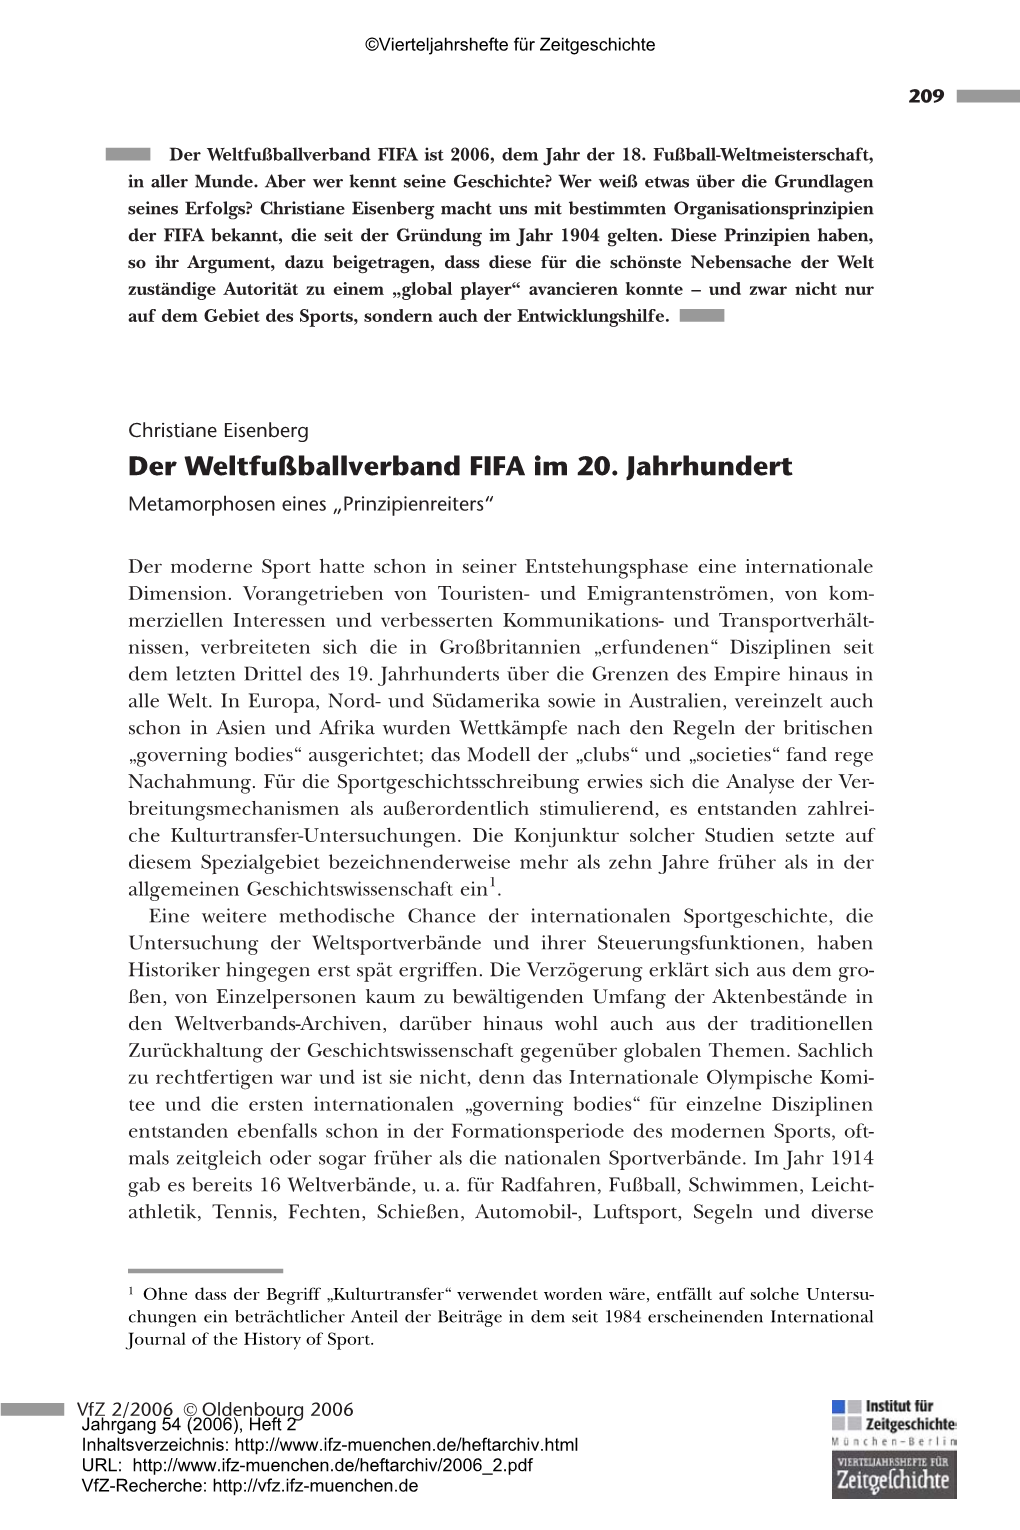 Der Weltfußballverband FIFA Im 20. Jahrhundert. Metamorphosen Eines „Prinzipienreiters“